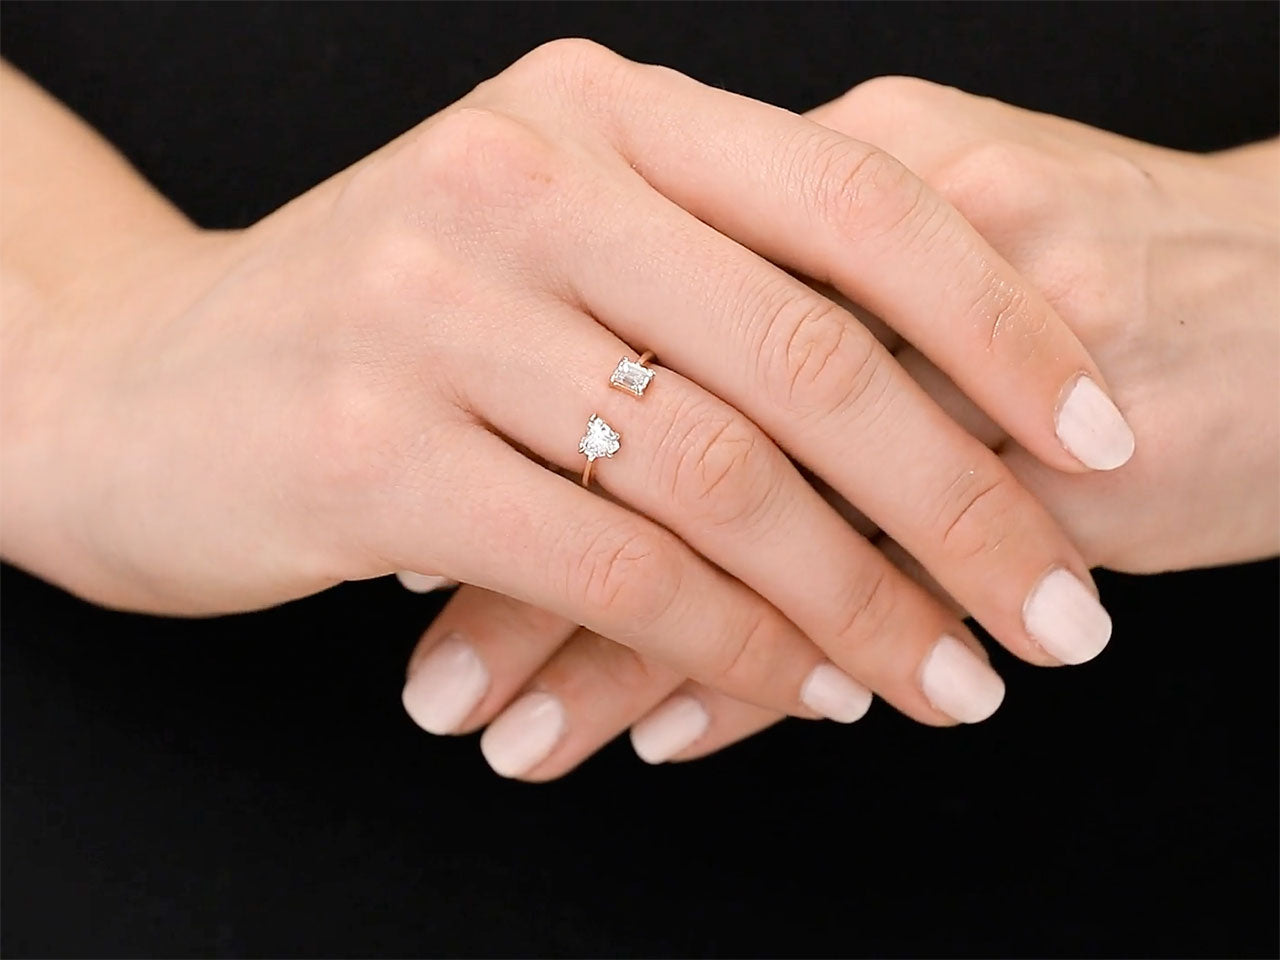 Beladora 'Bespoke' Open Band Diamond Ring, 0.73 total carats, in 18K Rose Gold